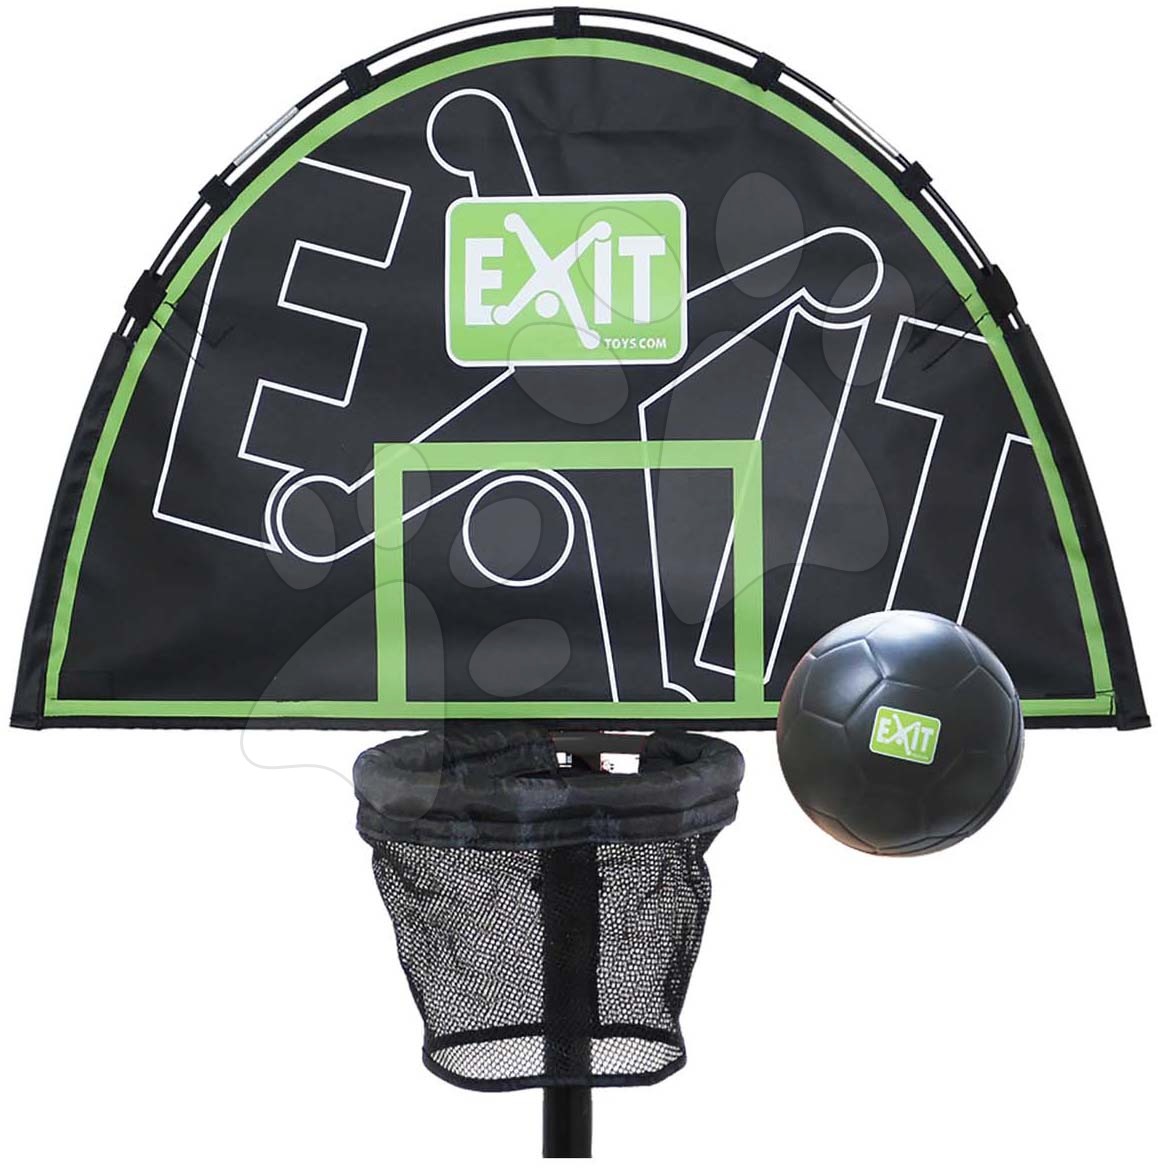 Basketbalový koš na trampolíny Trampoline Basket Exit Toys s pěnovým míčem